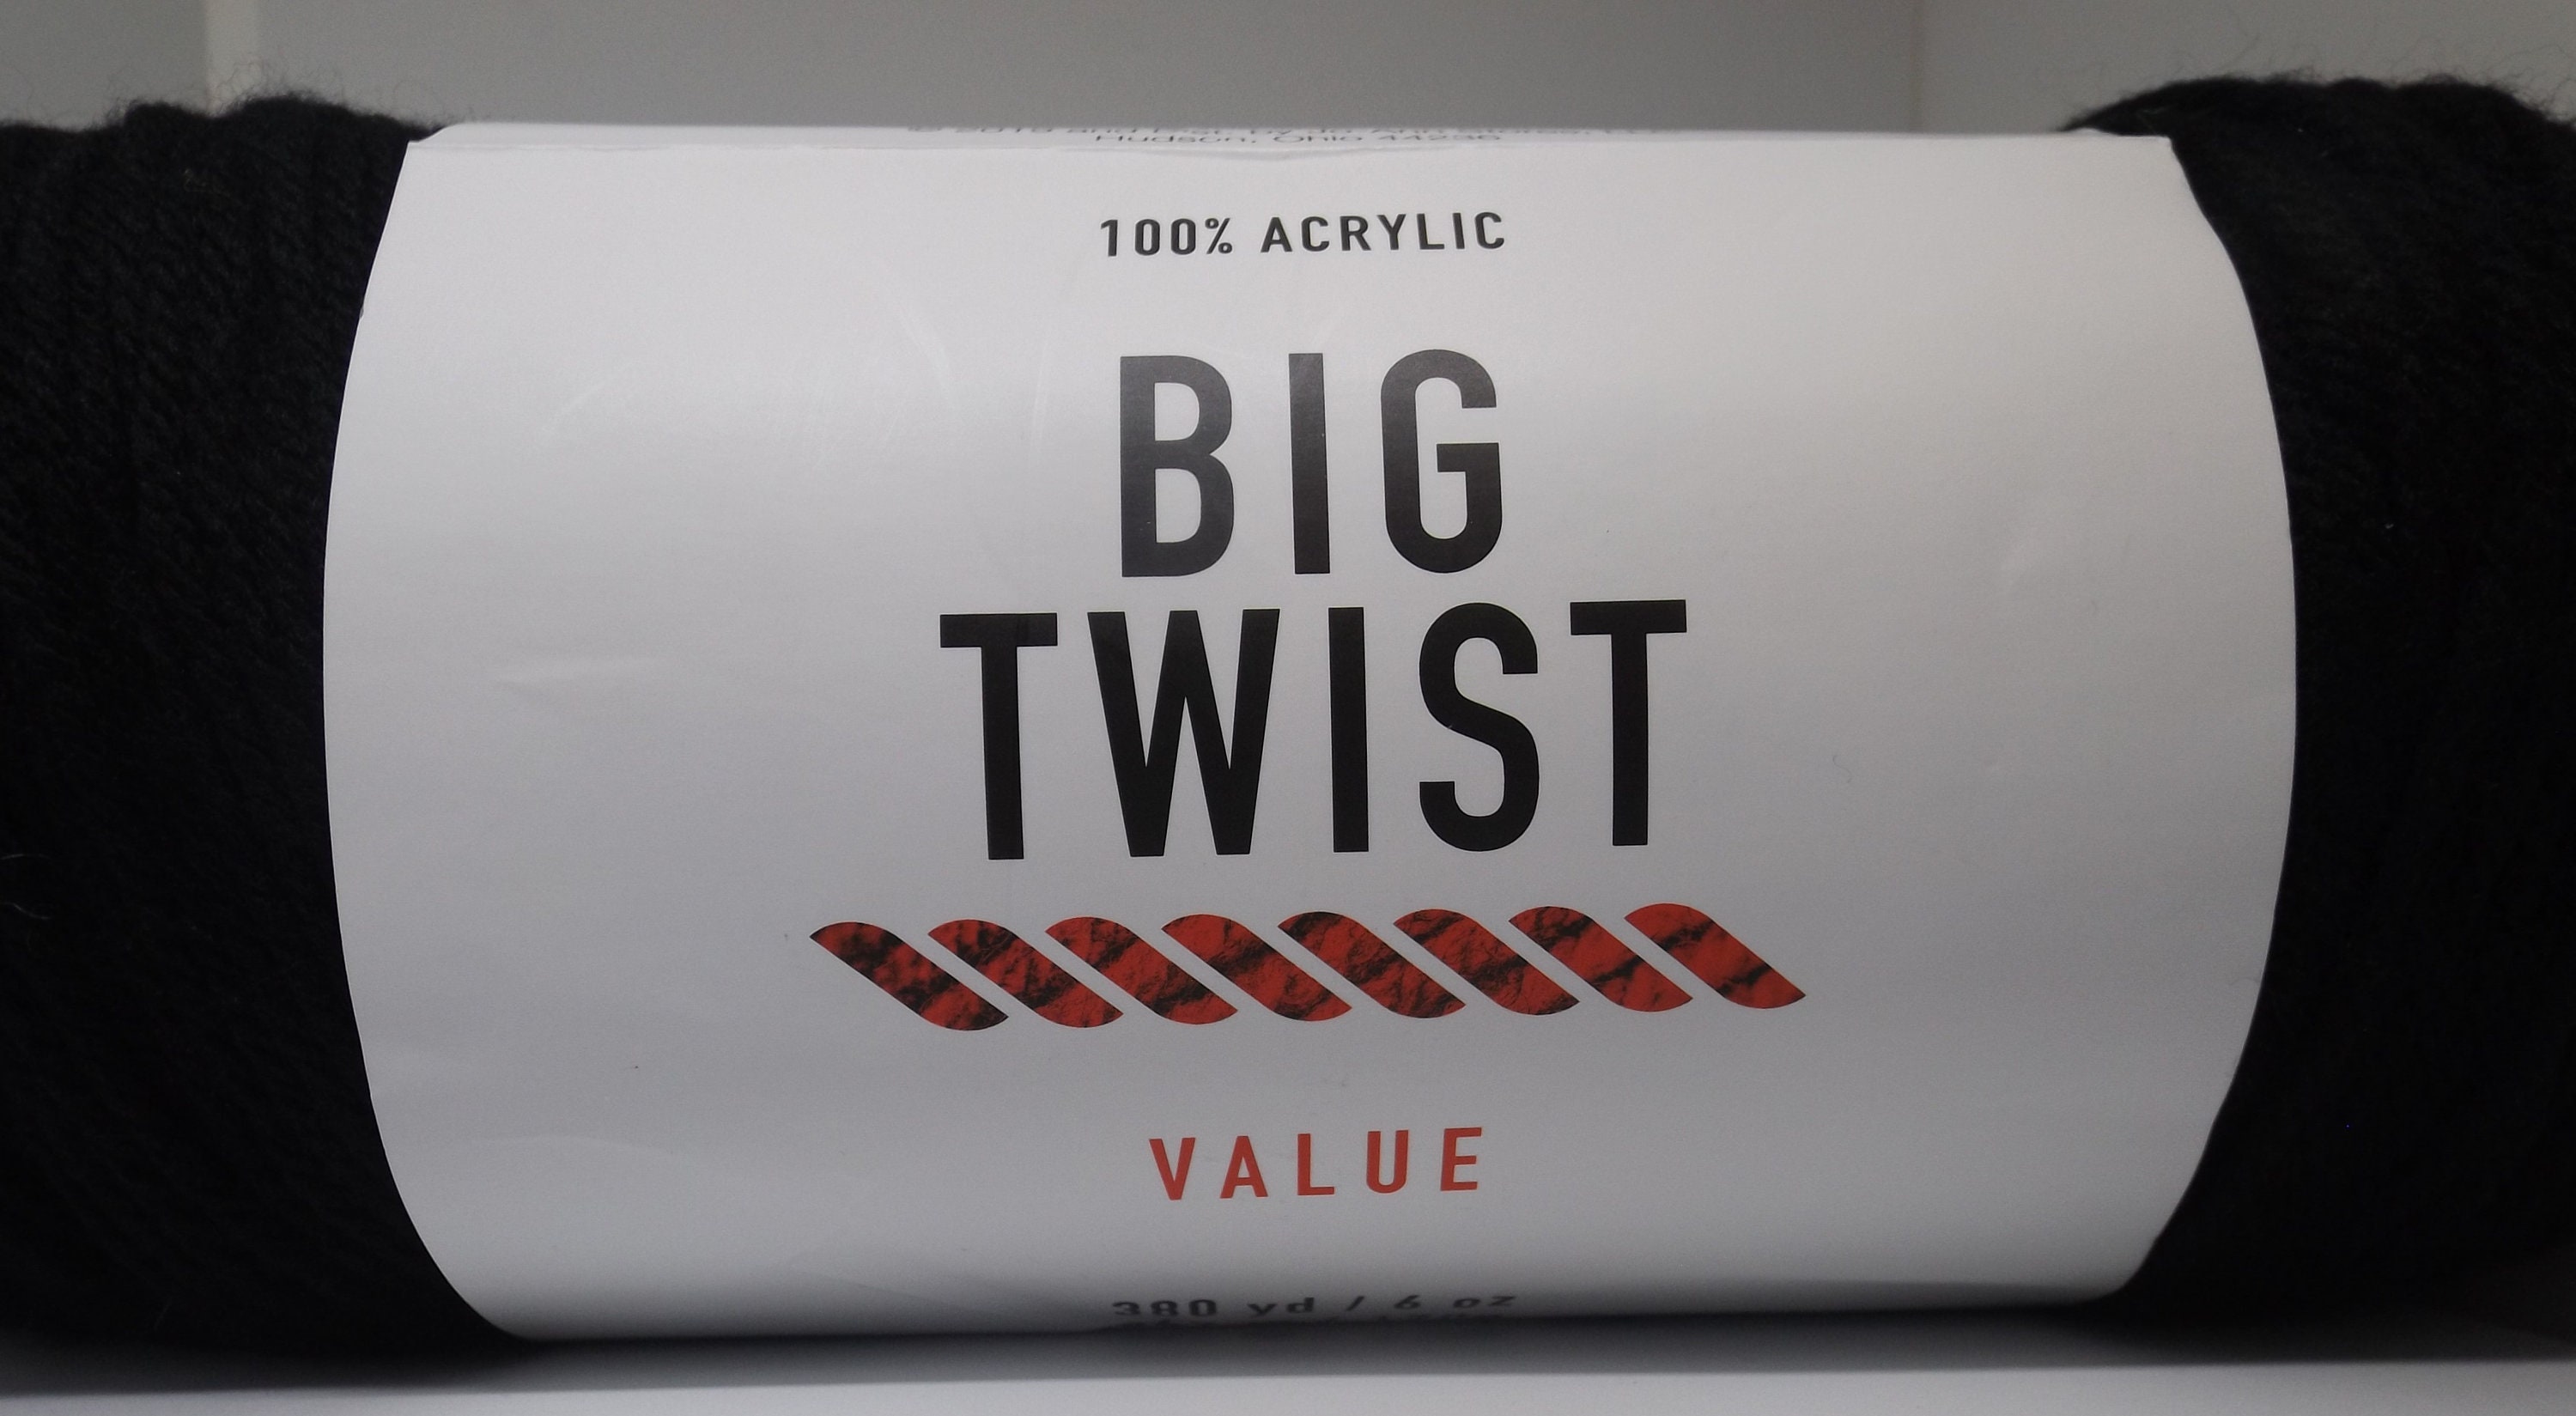 Big Twist 6oz Solid Medium Weight Acrylic 380yd Value Yarn - Cosmetic Pink - Big Twist Yarn - Yarn & Needlecrafts